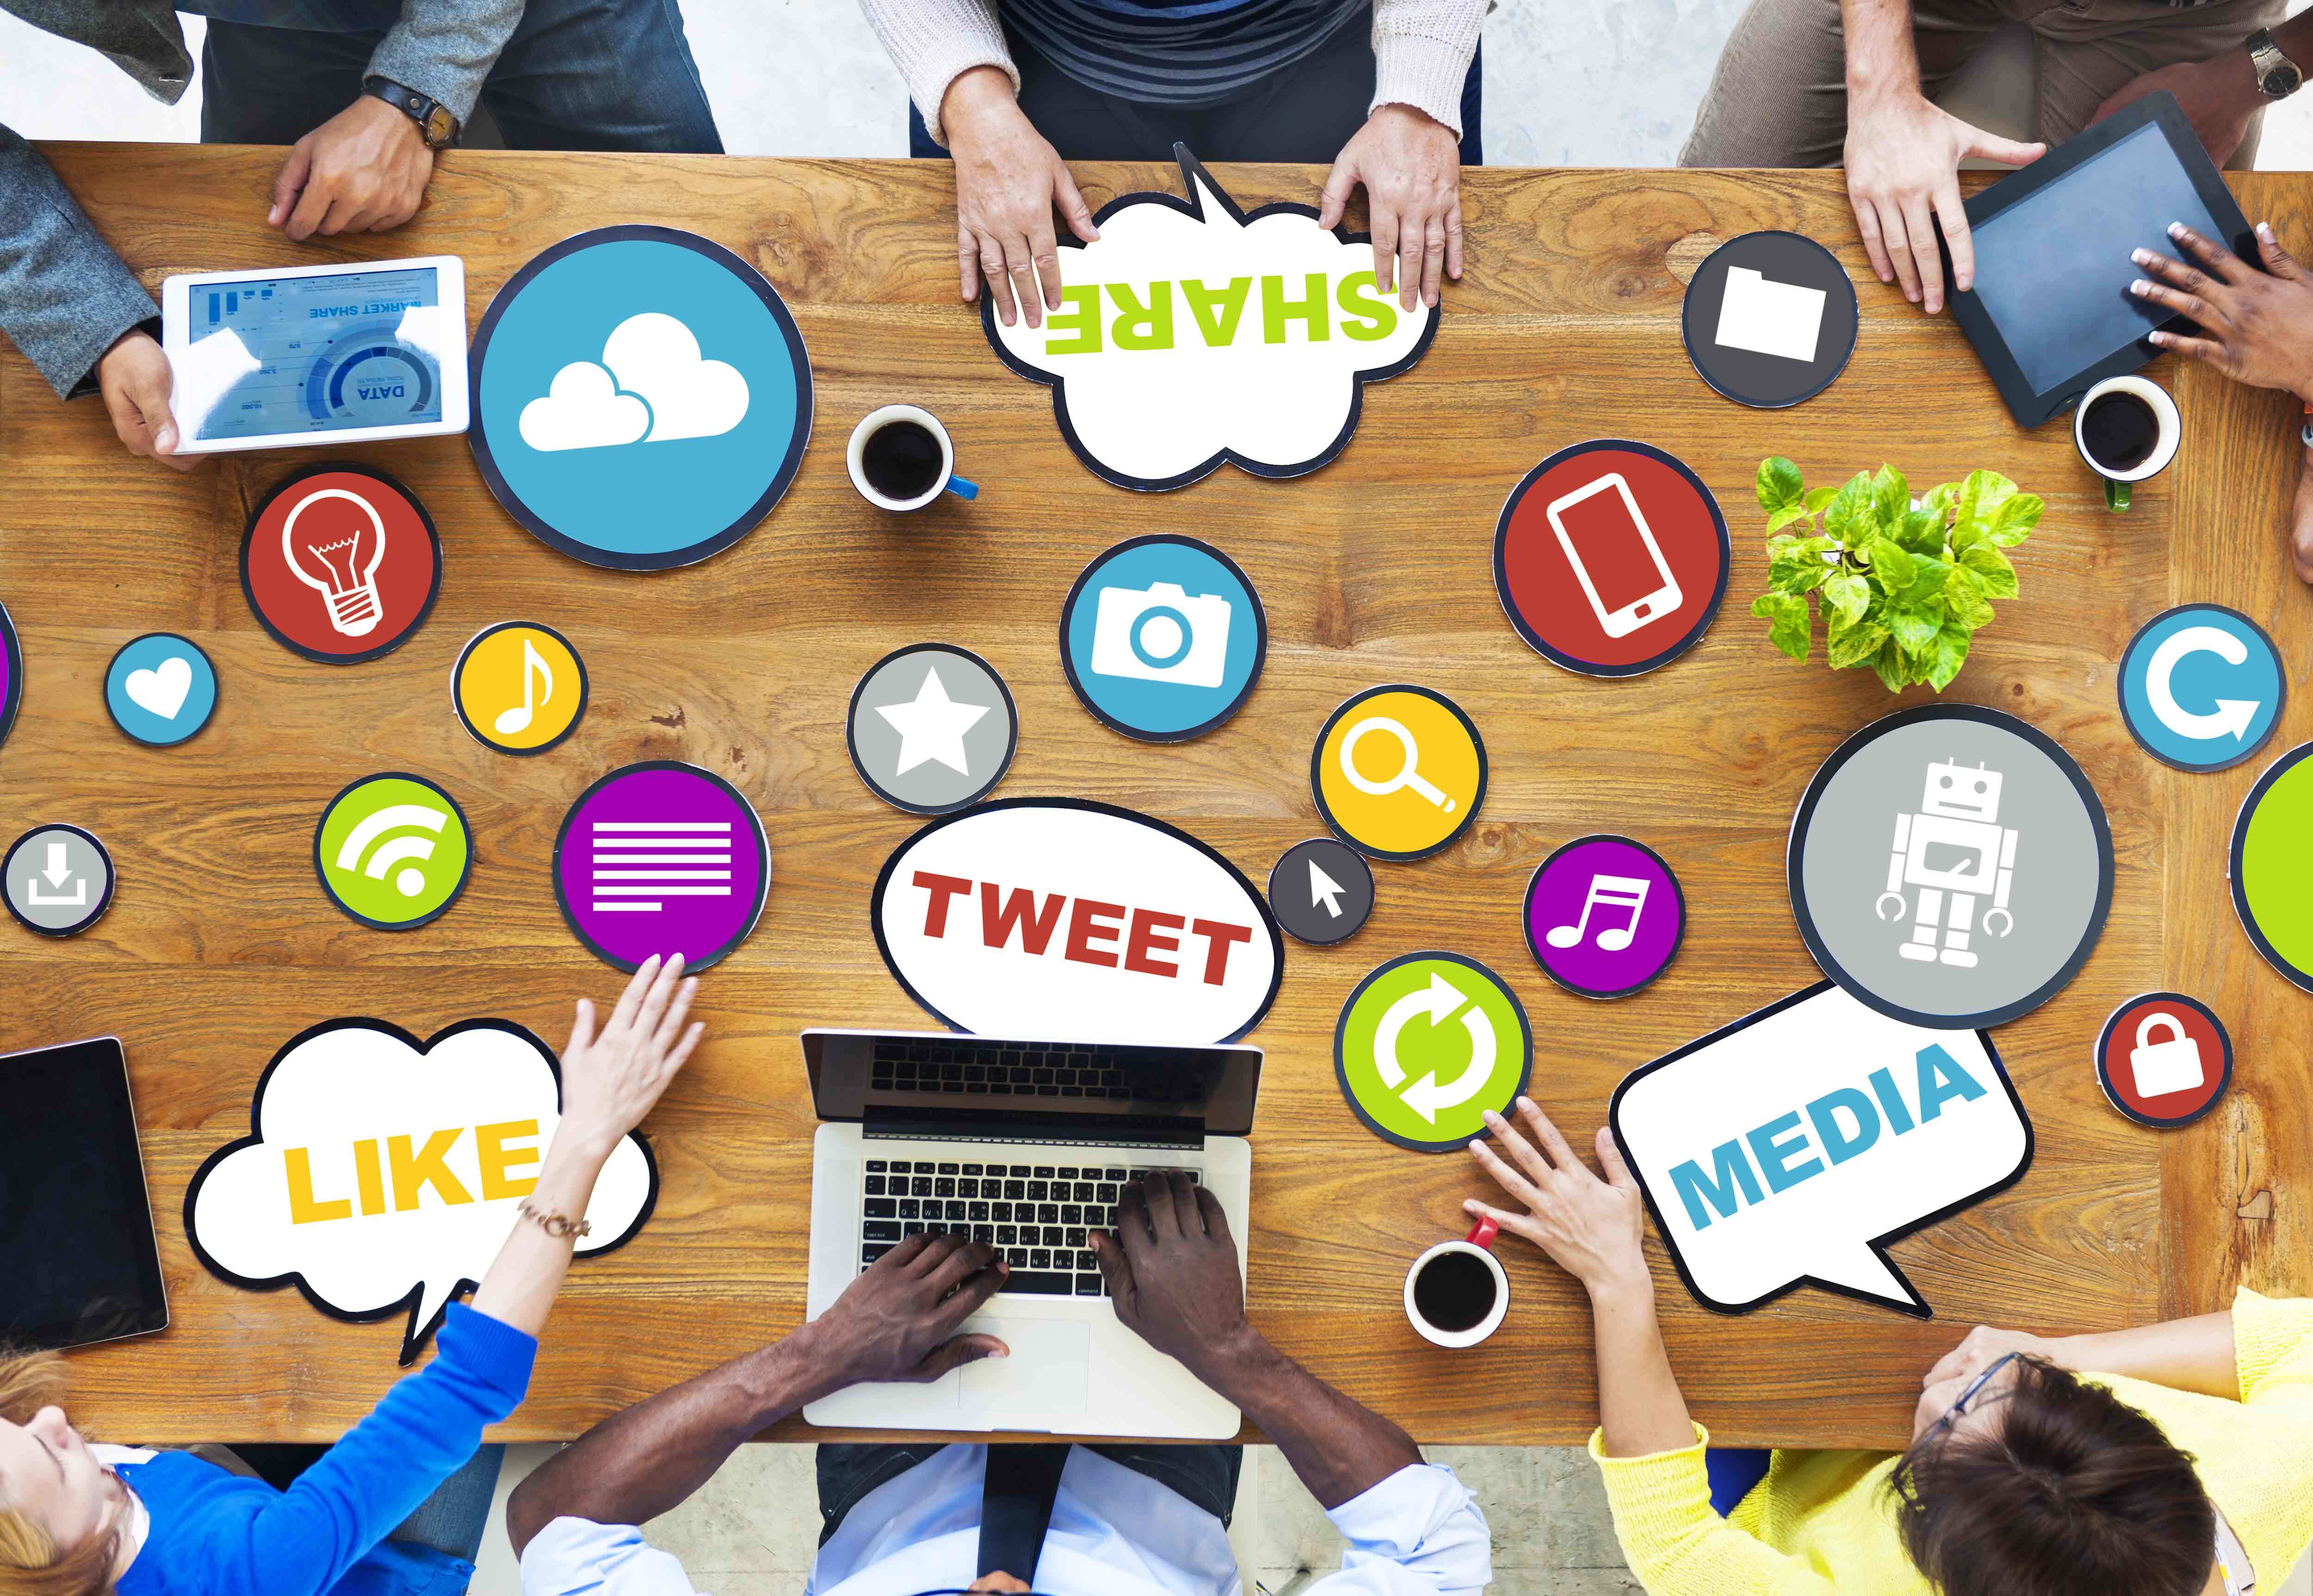 Social Media Marketing. Image of social media icons on desk.